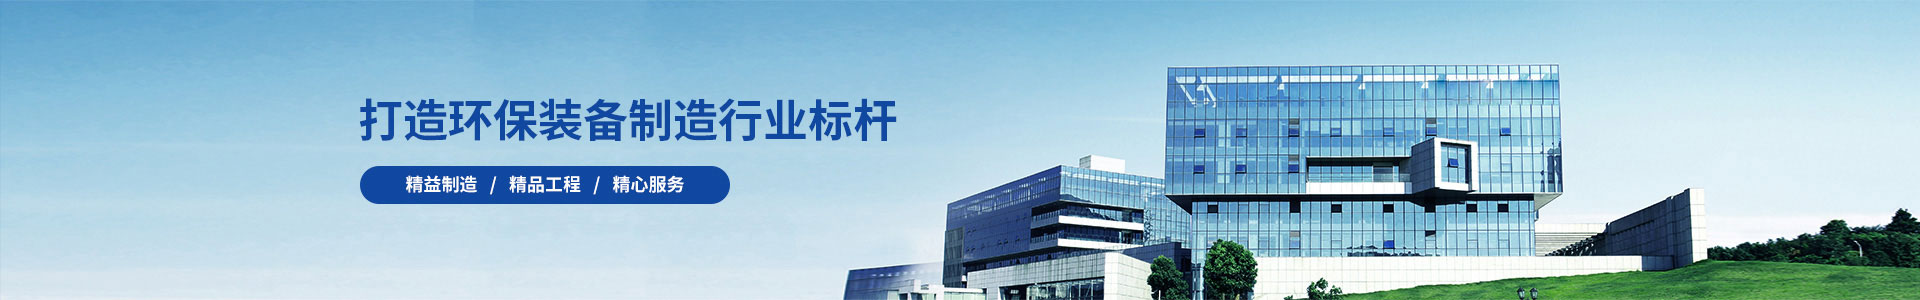 产品中心标题四-土壤修复成套-广州锦如广告有限公司